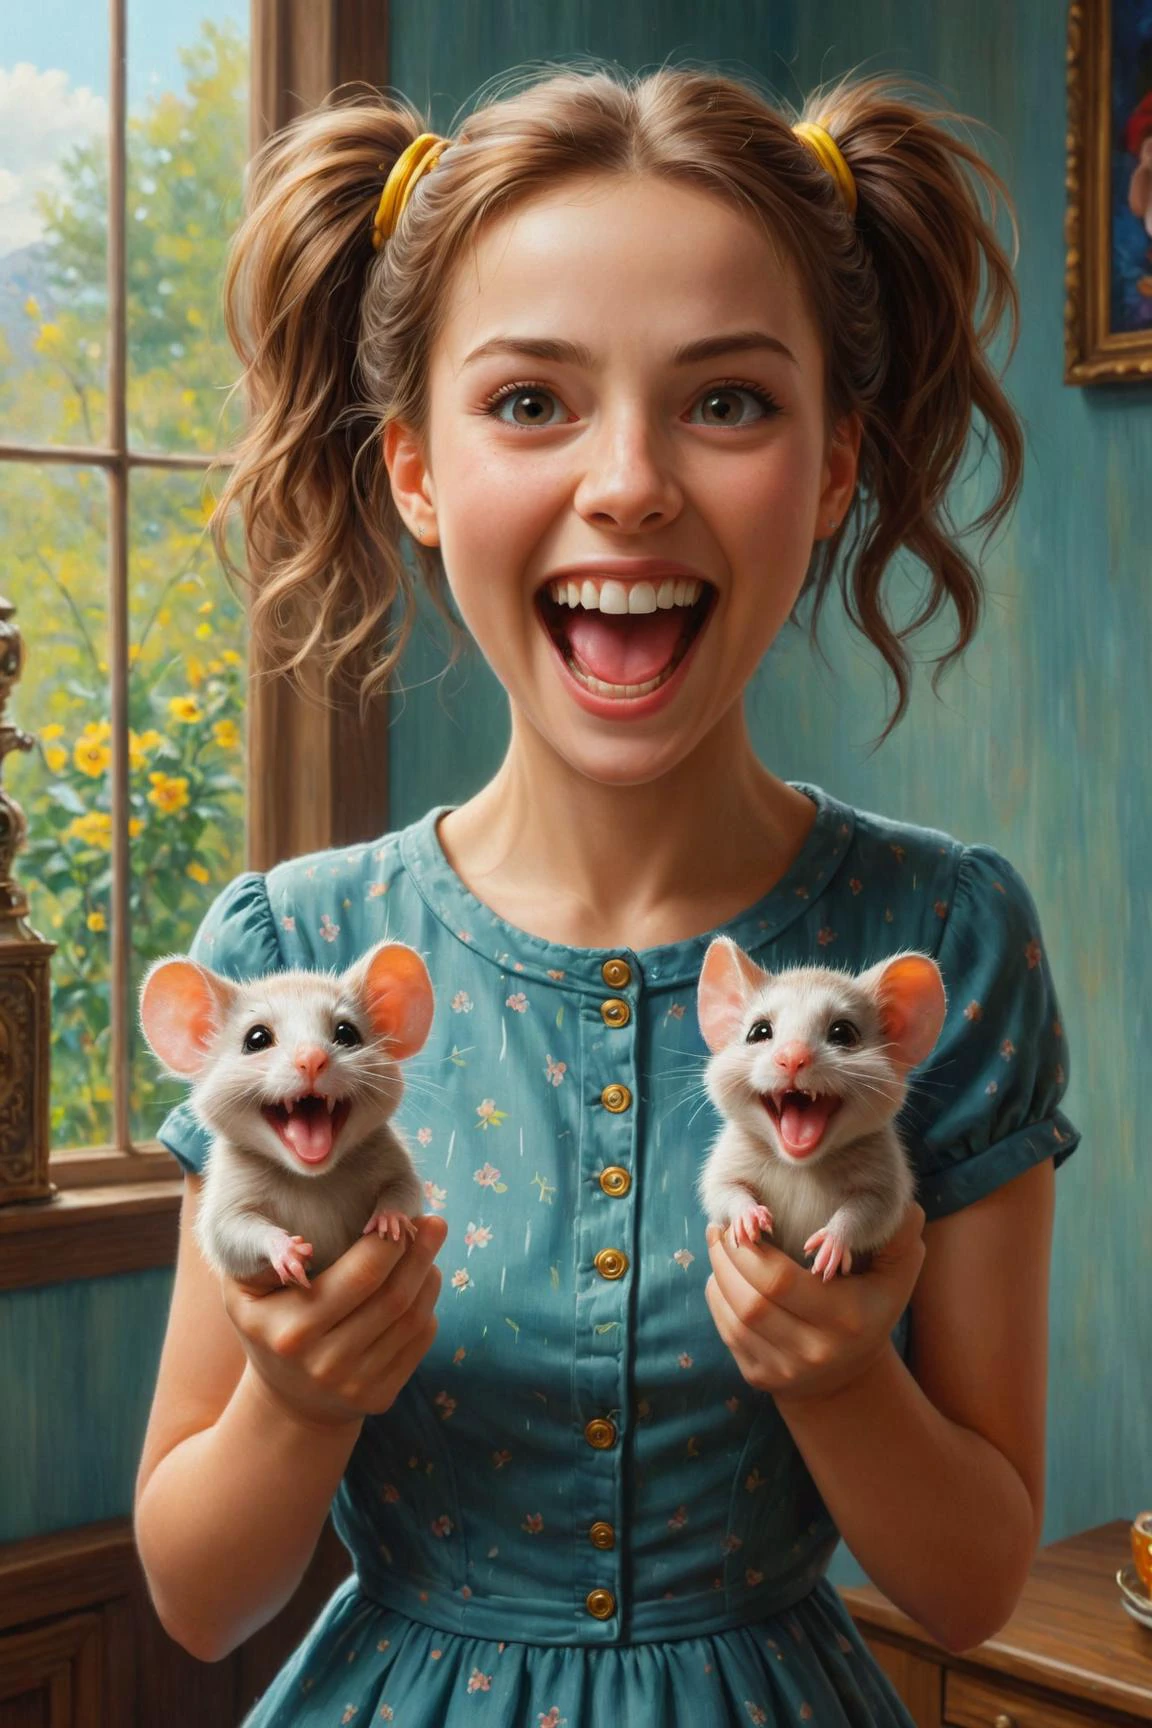 经过 (((洛里·厄尔利) 和凯莉·苏·德科尼克 ) 和新海诚 ) 和叶夫根尼·卢什平, 柯达电影胶片上的数字油画棒，描绘了一个快乐可爱的女人，手里拿着两只可爱的老鼠，狂笑着, 双持鼠标 